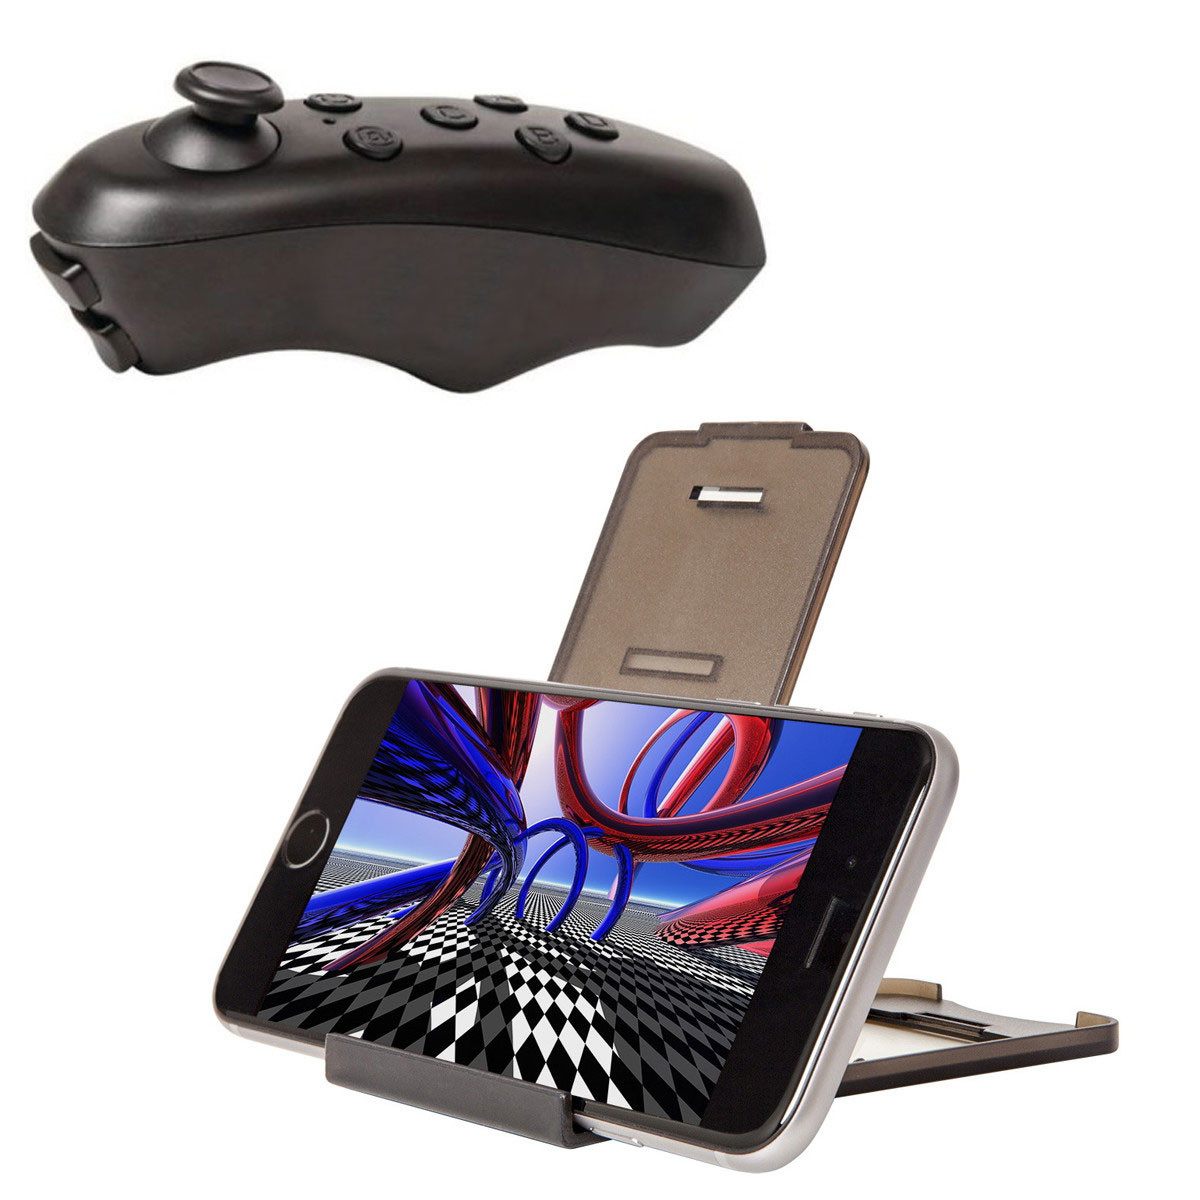 Mini Manette de Jeux vidéo sans fil pour iPhone, Smarphone et VR